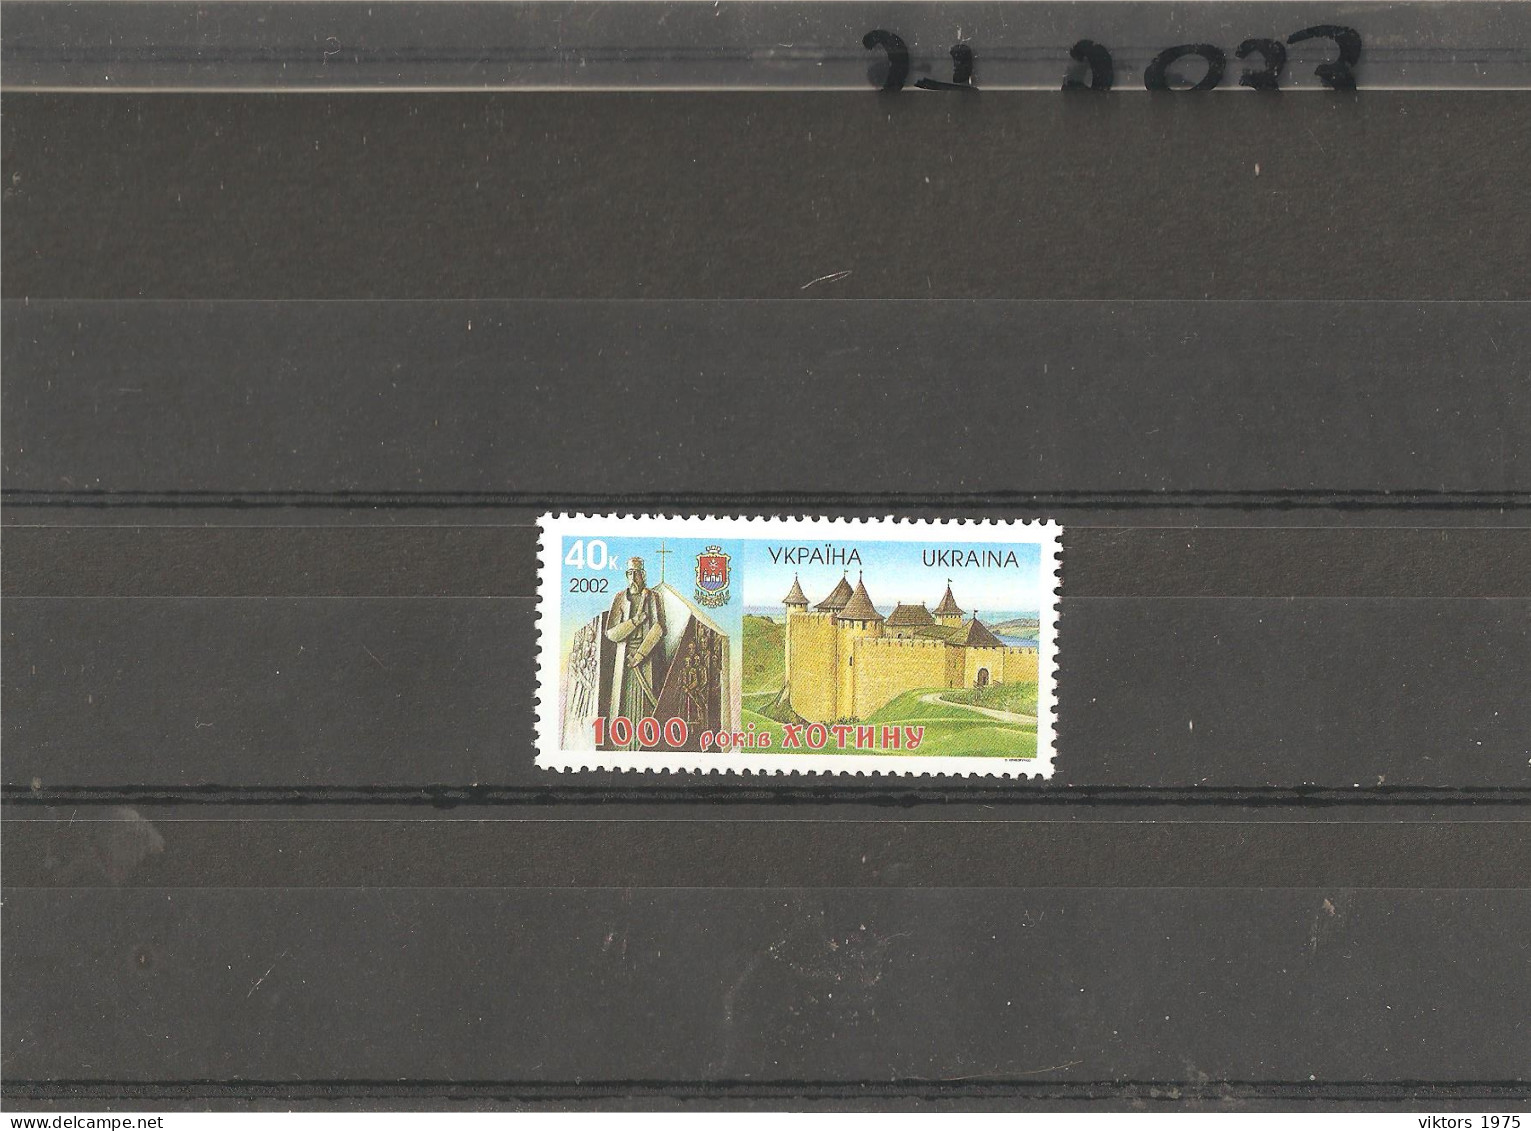 MNH Stamp Nr.534 In MICHEL Catalog - Ukraine